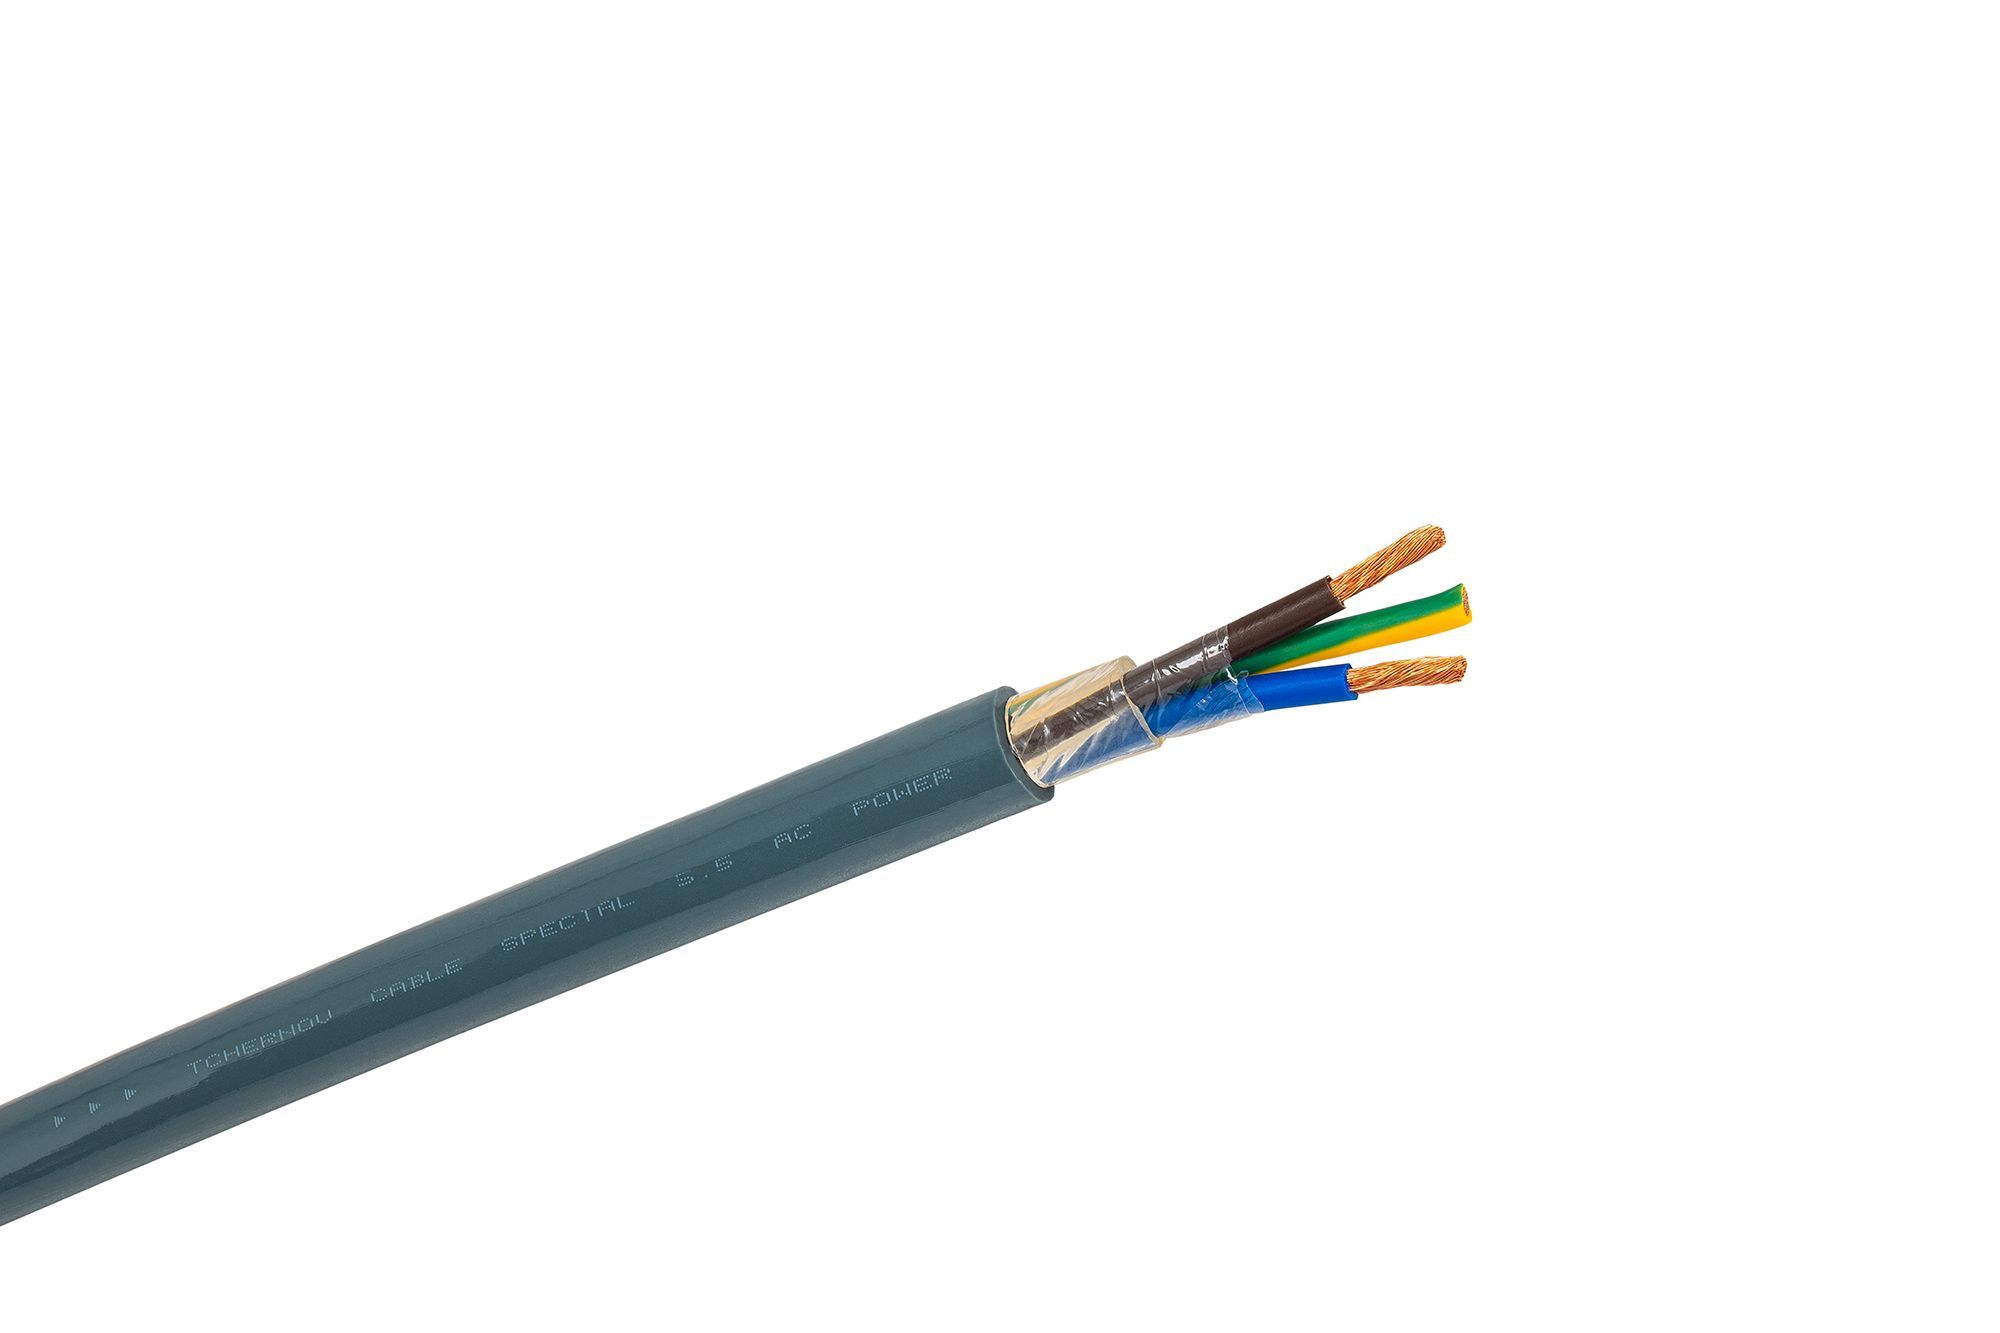 Кабель силовой 5 16. Кабель силовой 3х35+3х25/3е мм2; 3,6/6кv. UZCABLE силовой кабель 10mm монолит. Tchernov Cable Special 4.0 Speaker wire. Силовой кабель Nordost.